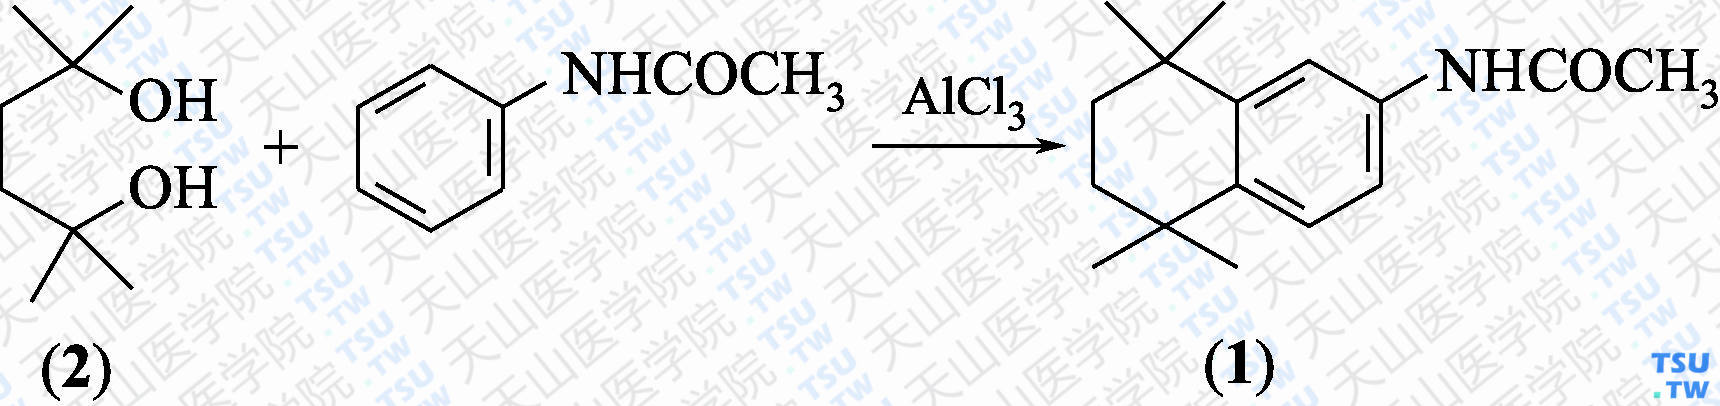 1，2，3，4-四氢-1，1，4，4，-四甲基-6-乙酰氨基萘（分子式：C<sub>16</sub>H<sub>23</sub>NO）的合成方法路线及其结构式